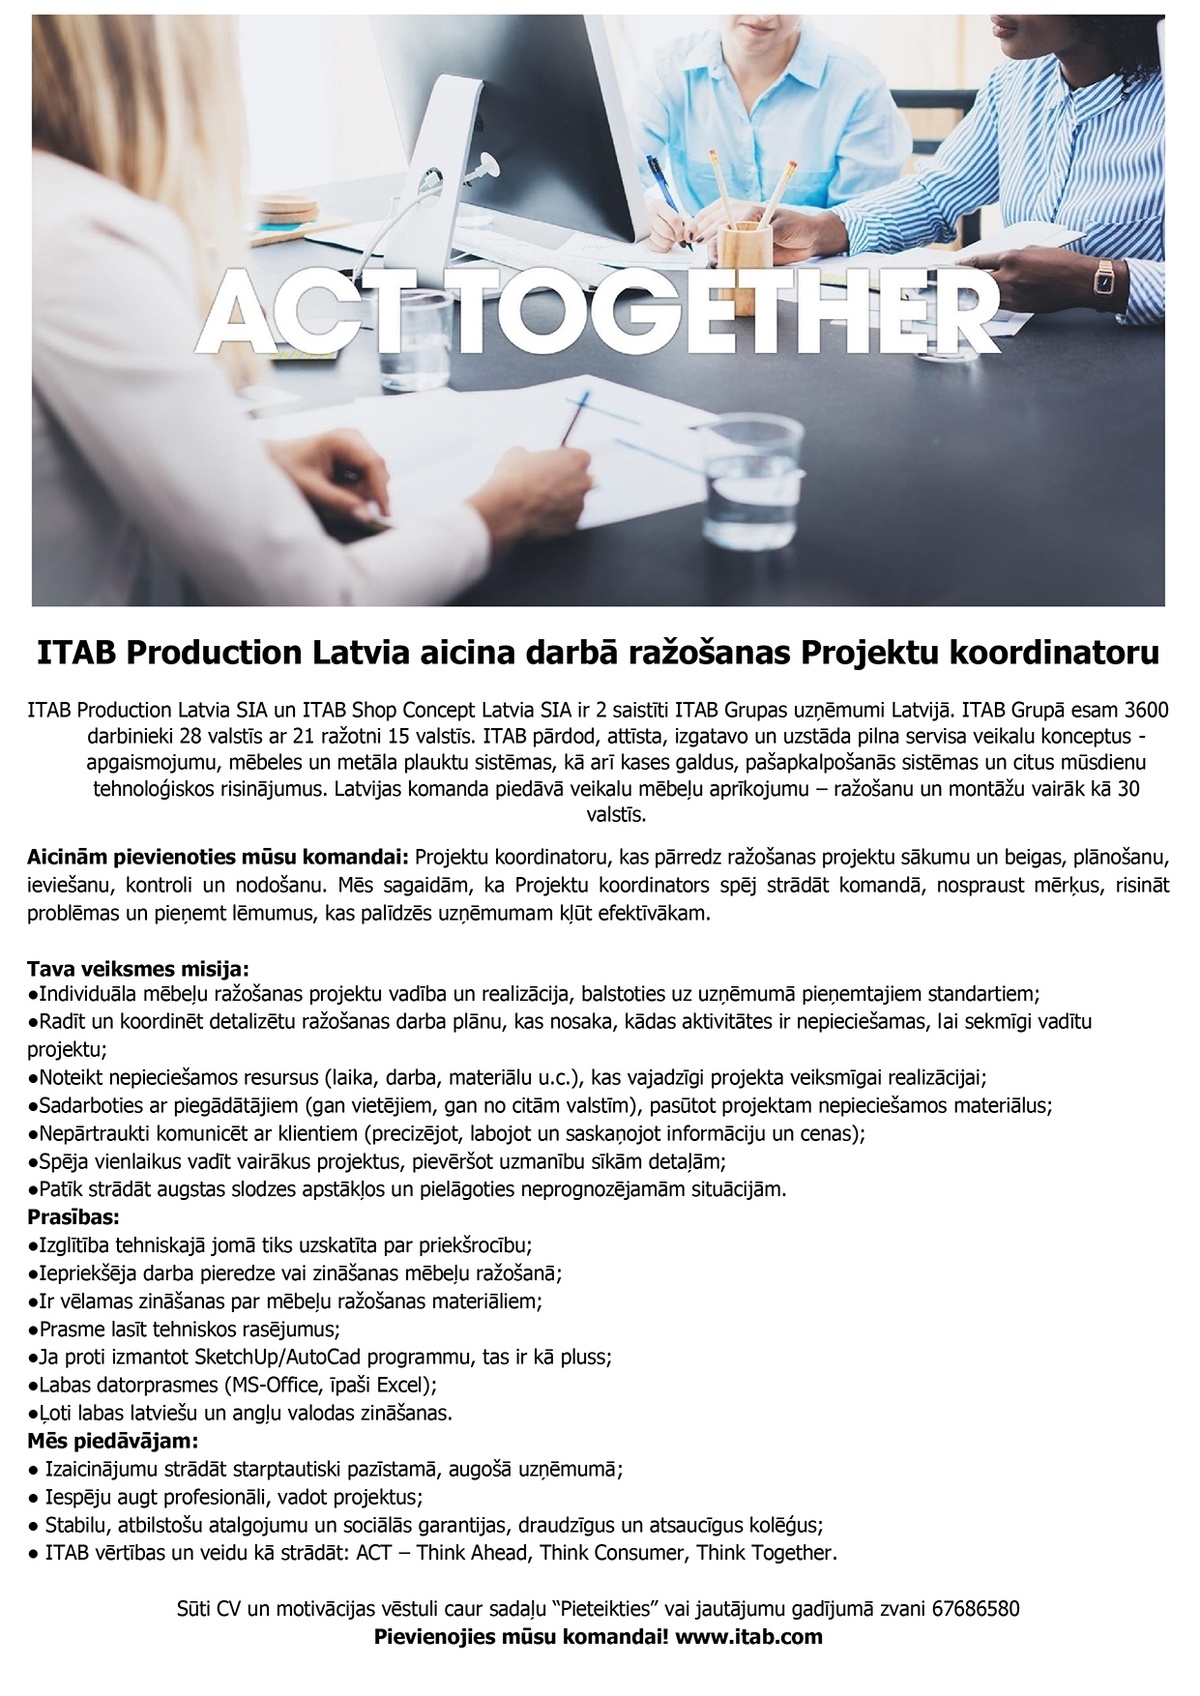 ITAB Production Latvia, SIA Mēbeļu ražošanas projektu koordinators/-e